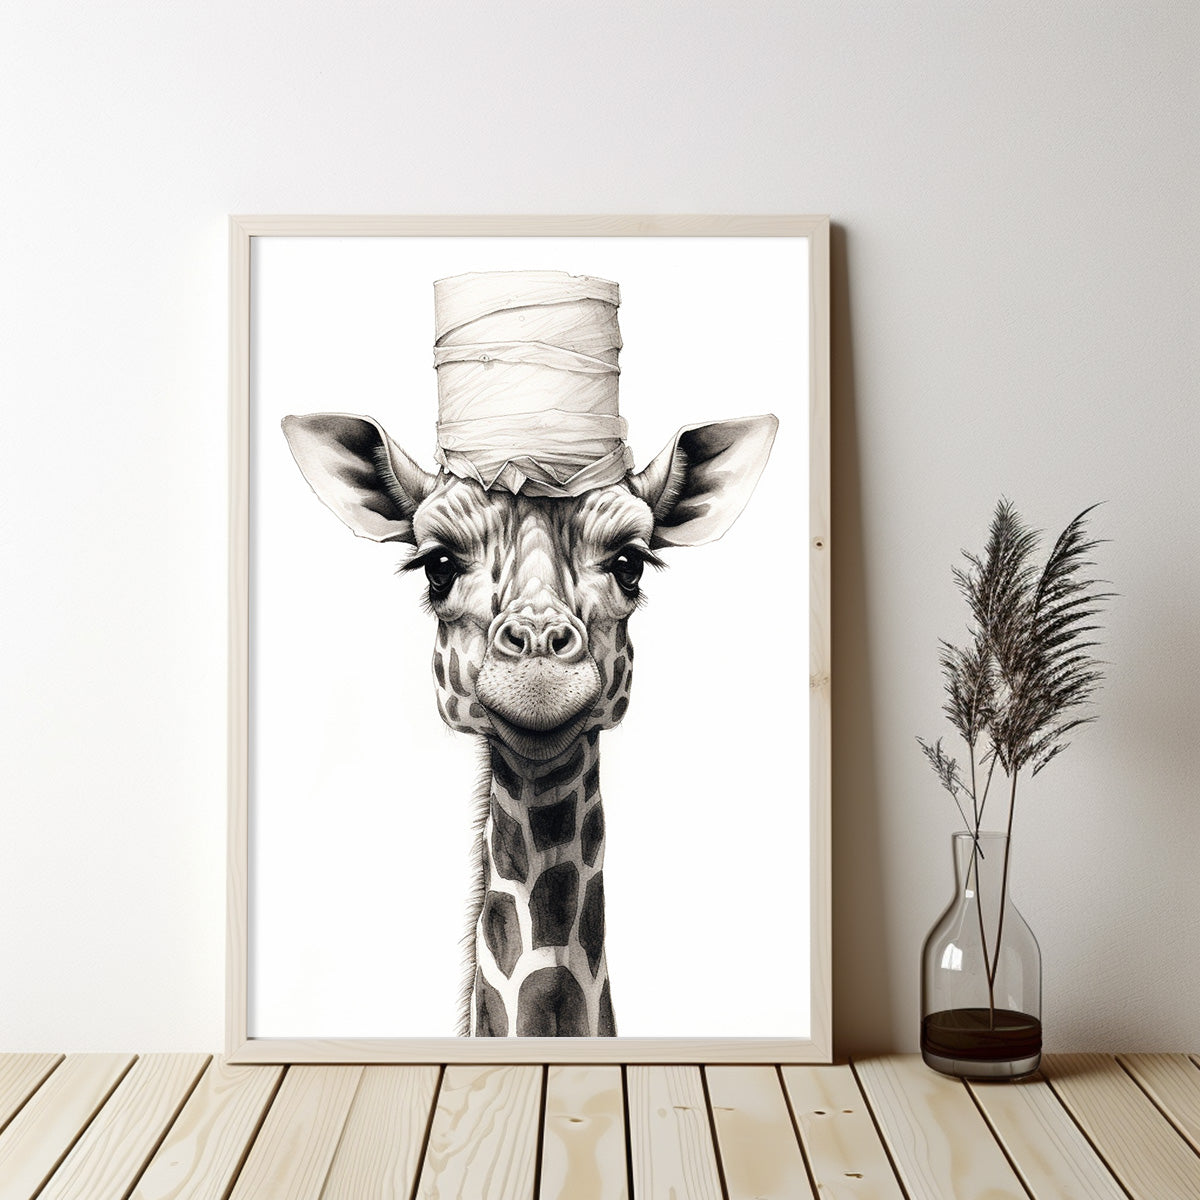 Giraffe With Toilet Paper Canvas Art, Giraffe With Toilet Paper, Funny Giraffe Art, Bathroom Wall Decor, Home Decor, Bathroom Wall Art, Animal Wall Decor, Animal Decor, Animal Gift